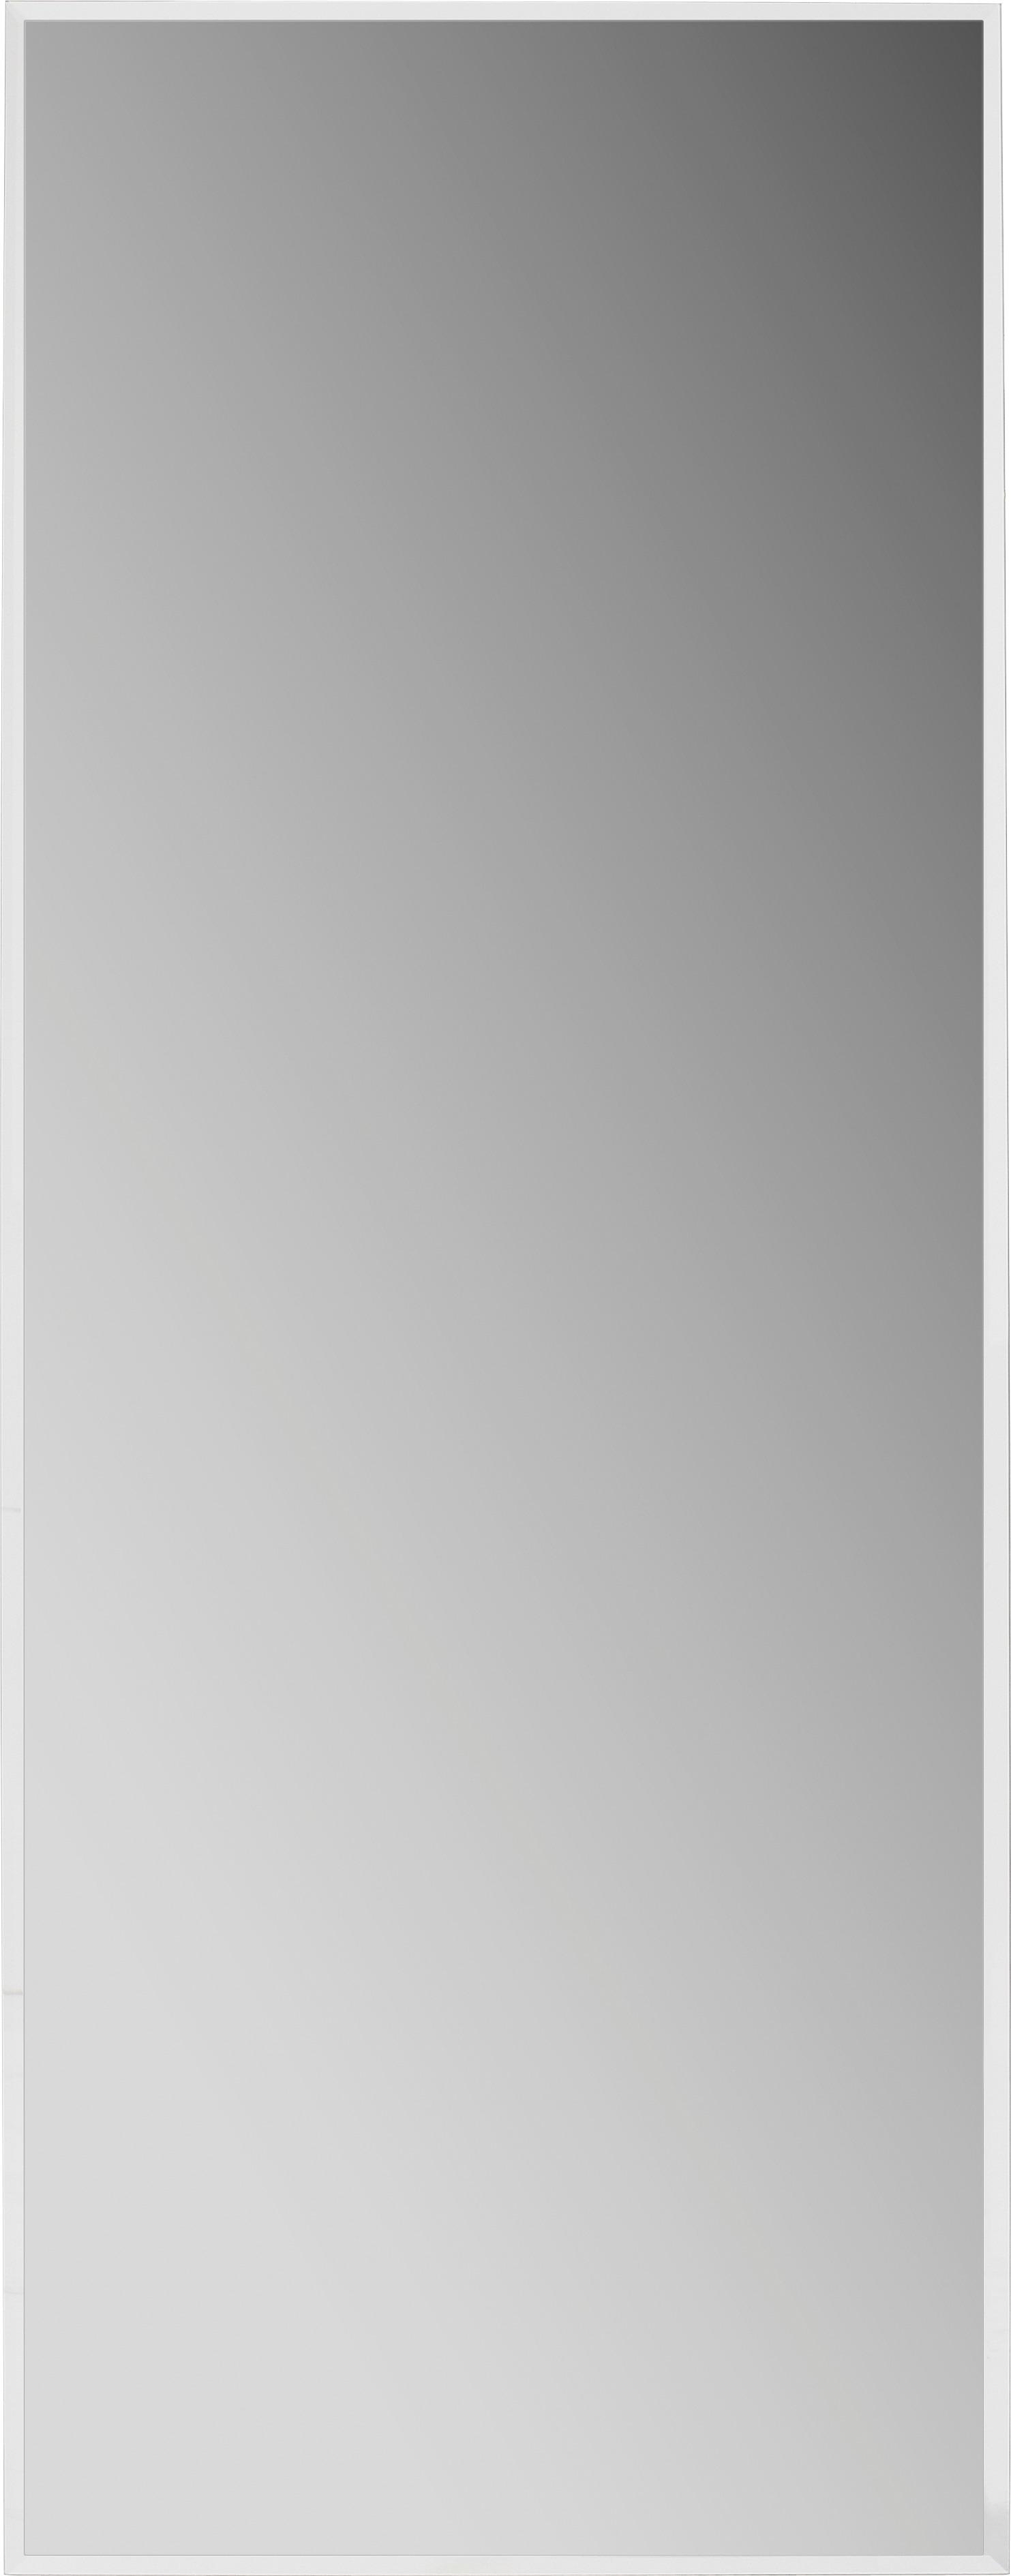 Wandspiegel Crystal BxH: 120x45 cm - MODERN, Glas (120/45cm)